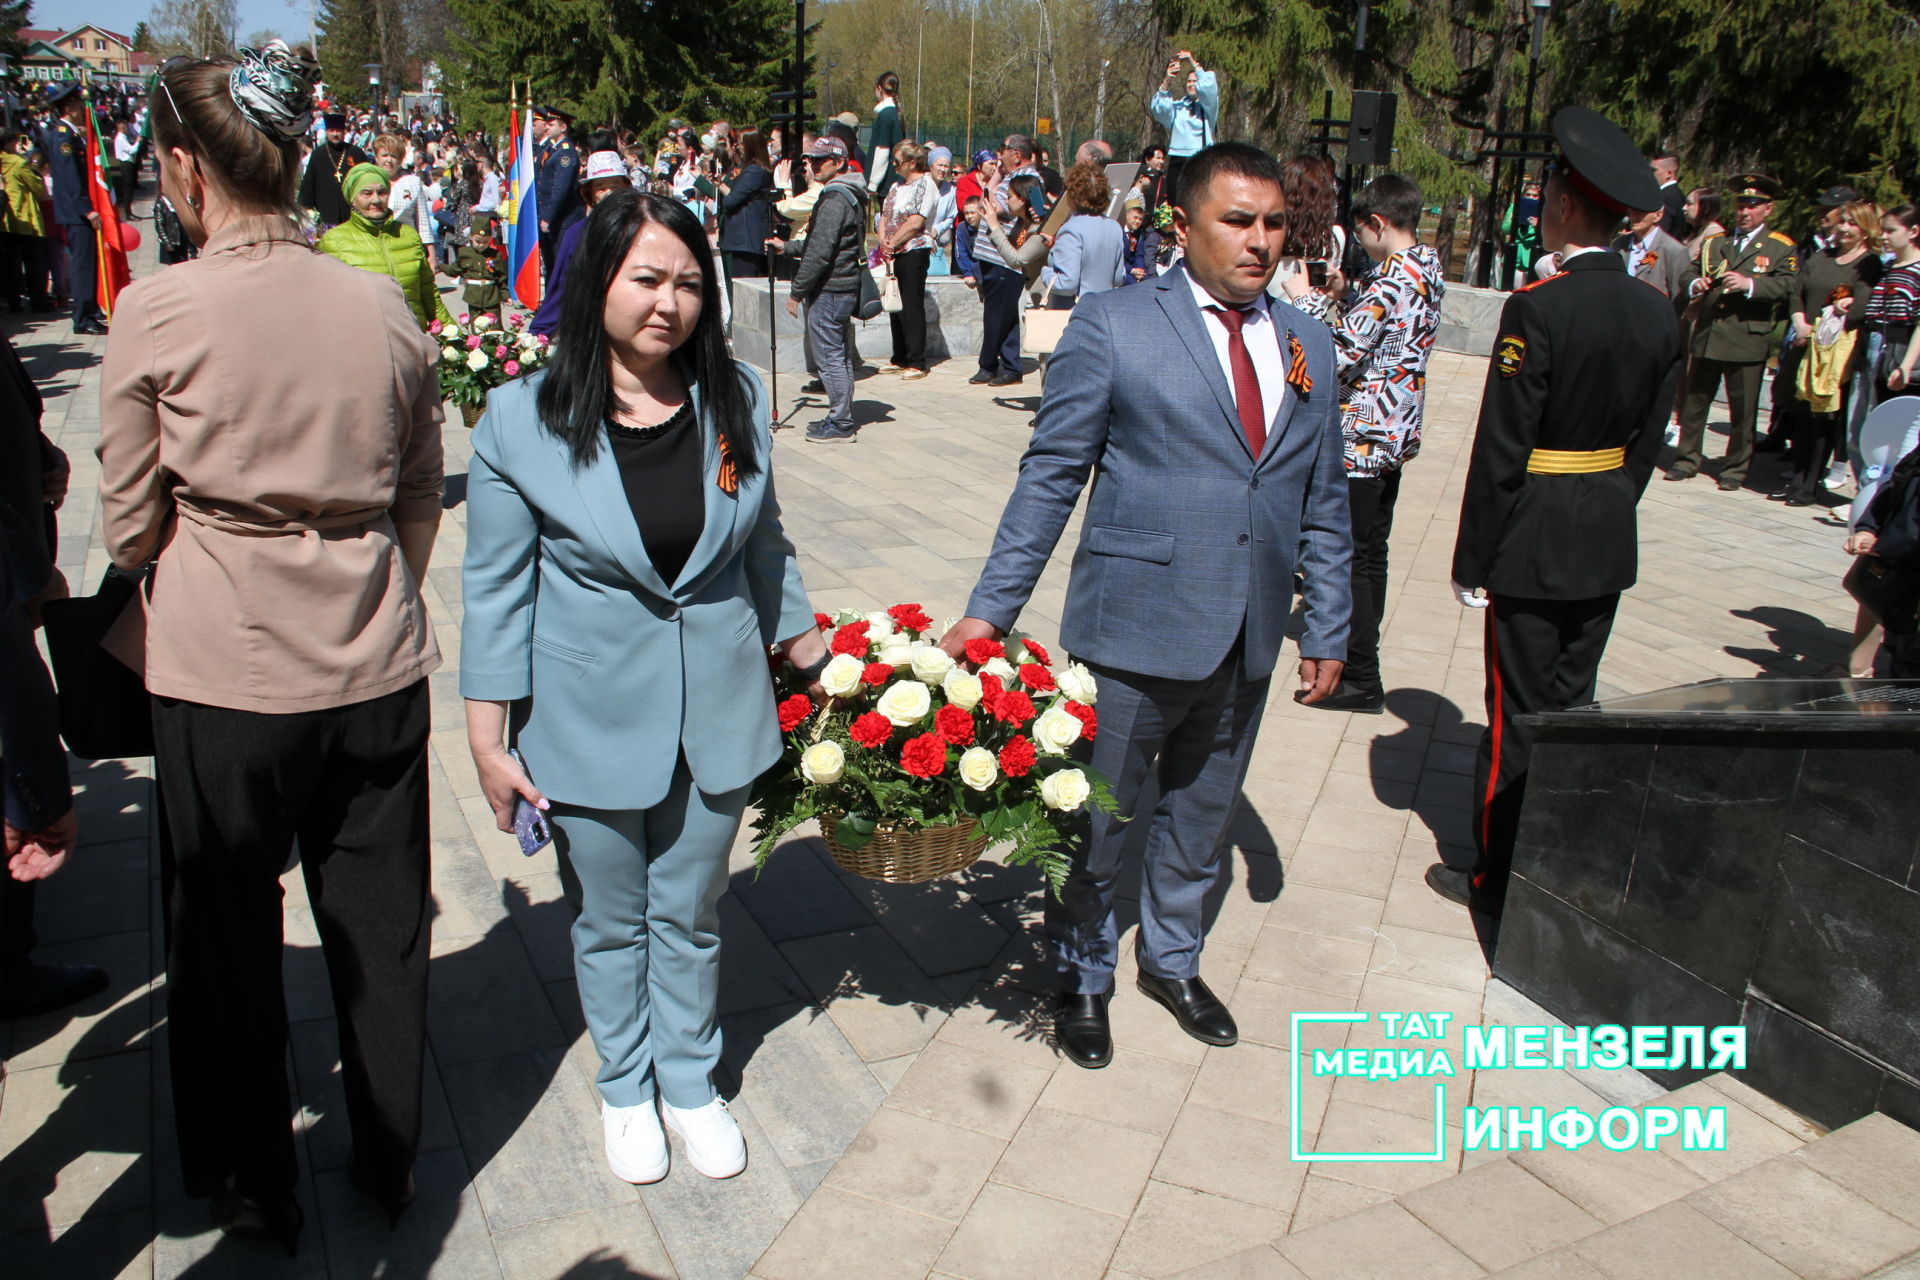 Мензелинцы возложили цветы к памятникам в честь участников Великой Отечественной войны